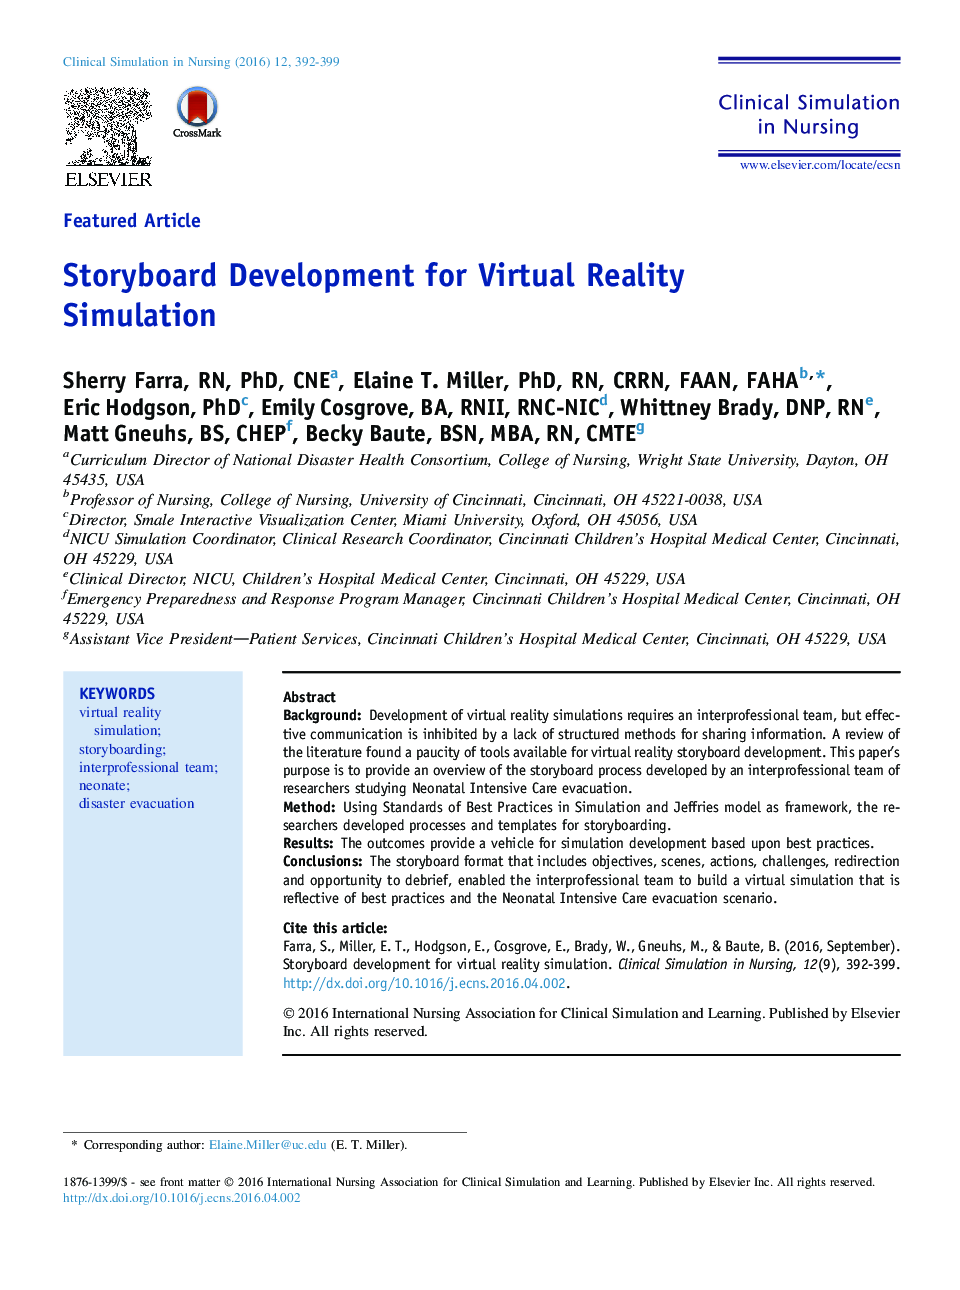 توسعه استوری بورد برای شبیه سازی واقعیت مجازی